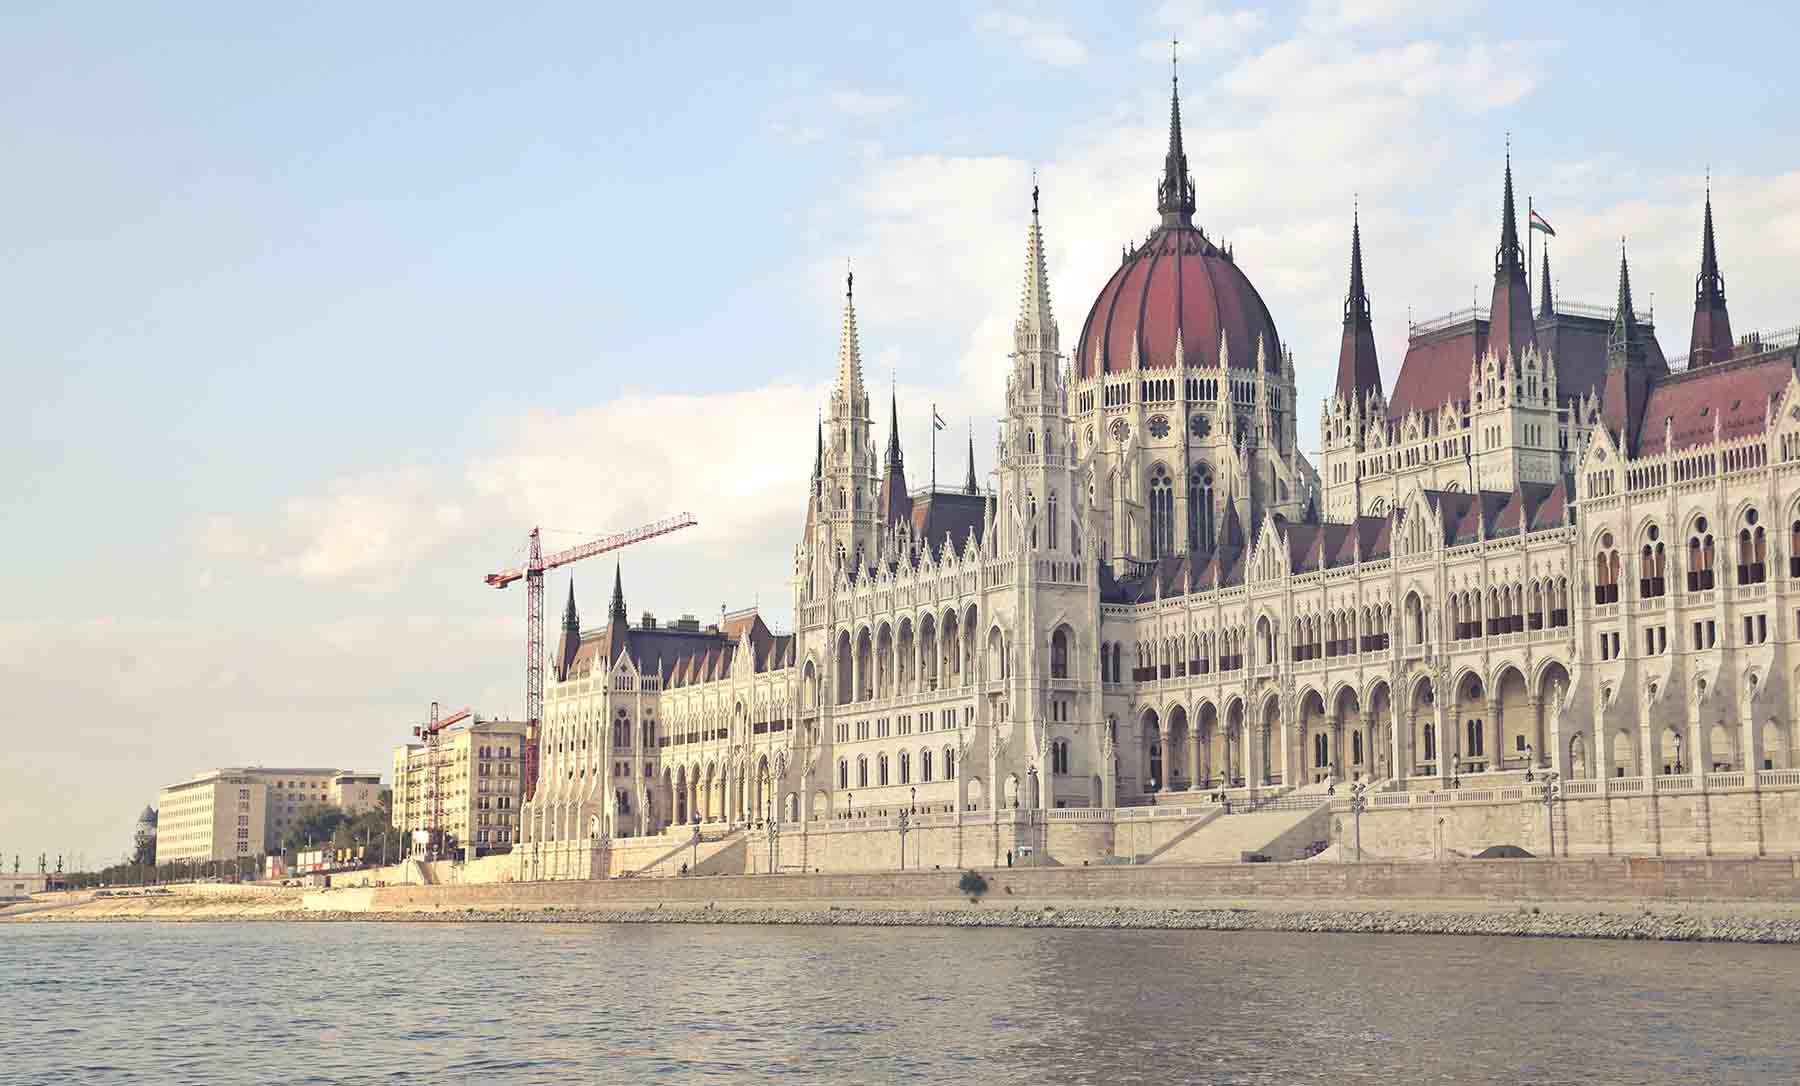 پارلمان مجارستان - مهاجرت به آلمان از طریق مجارستان